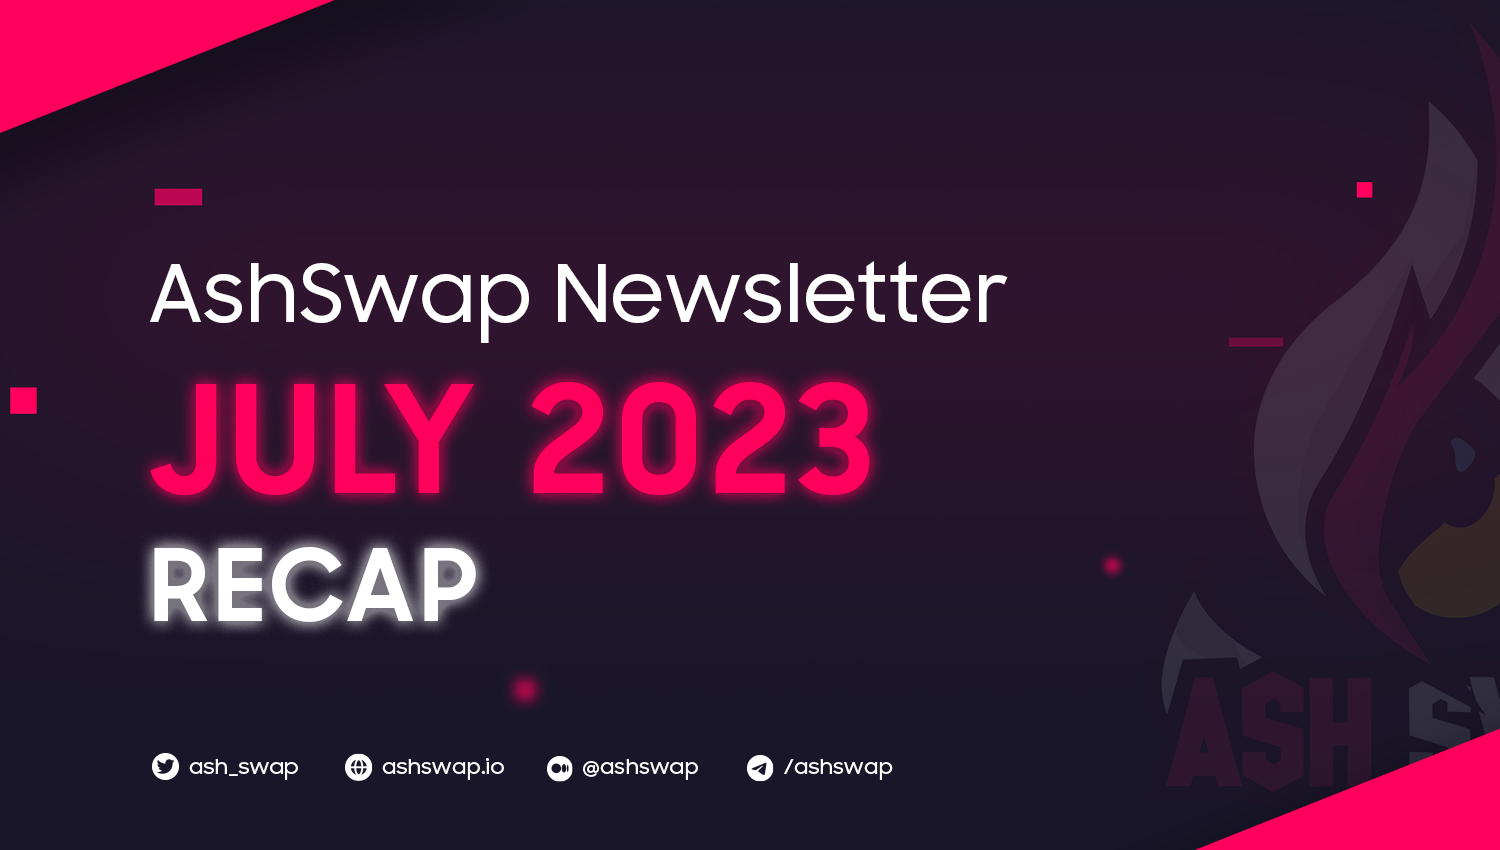 ashswap newsletter -july recap